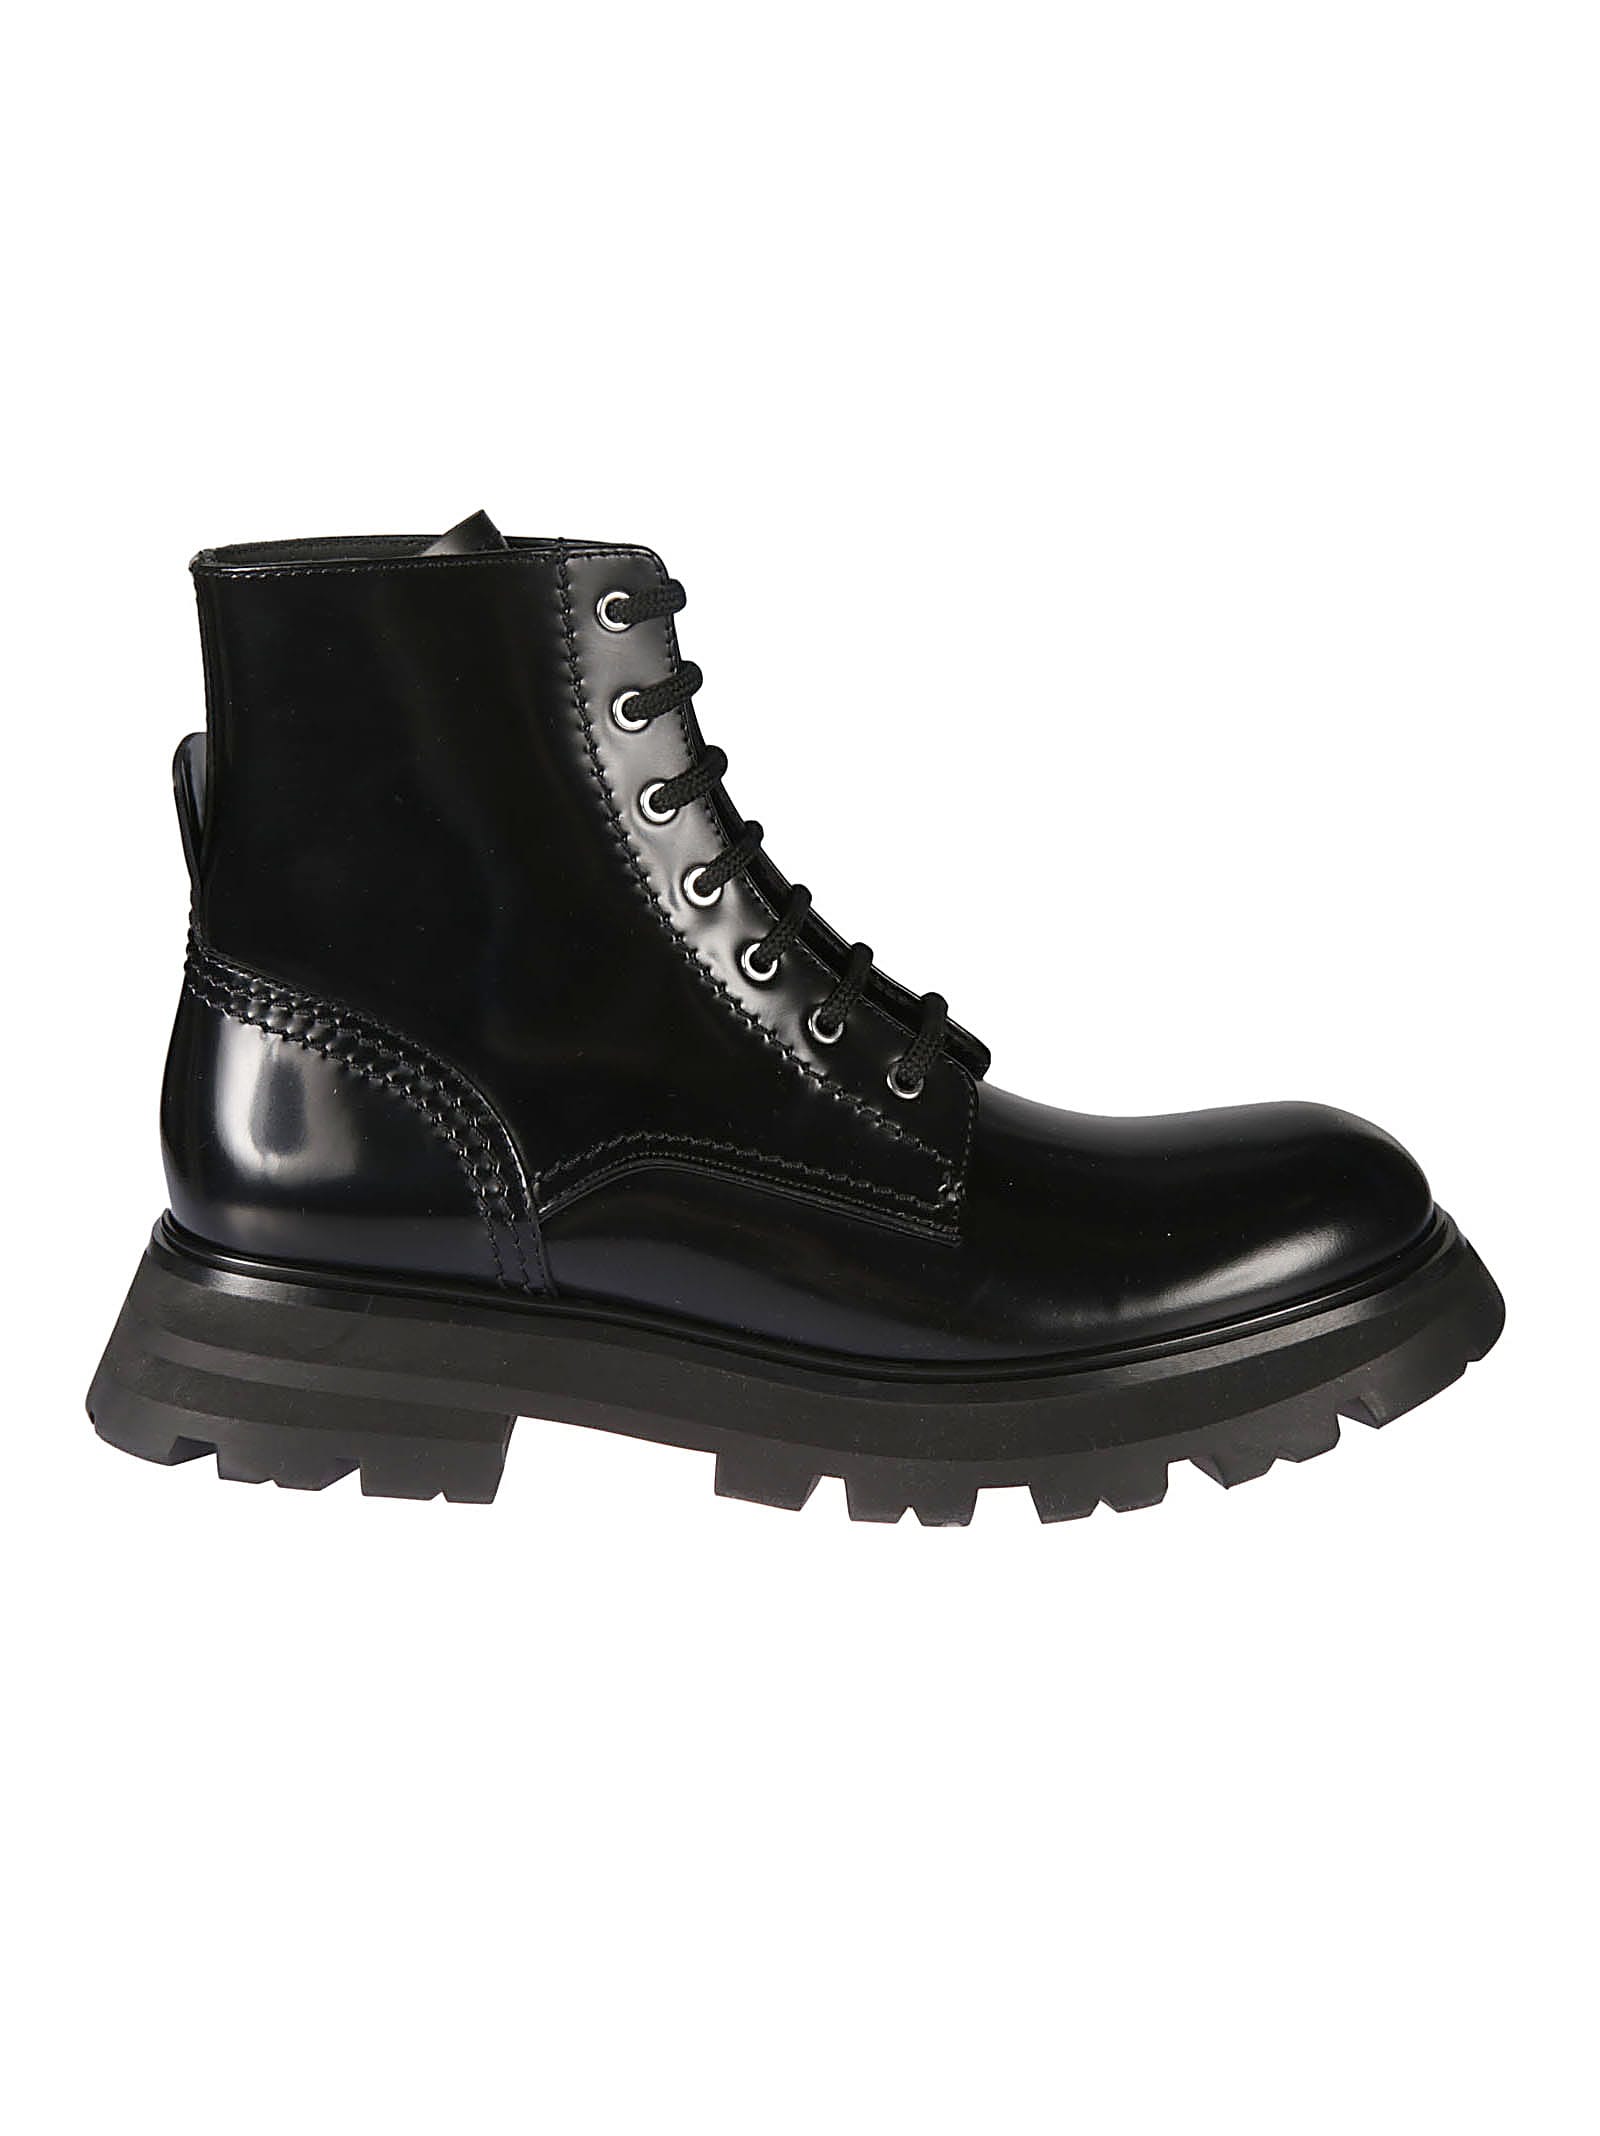 Buy Alexander McQueen Shiny Liquid Boots online, shop Alexander McQueen shoes with free shipping